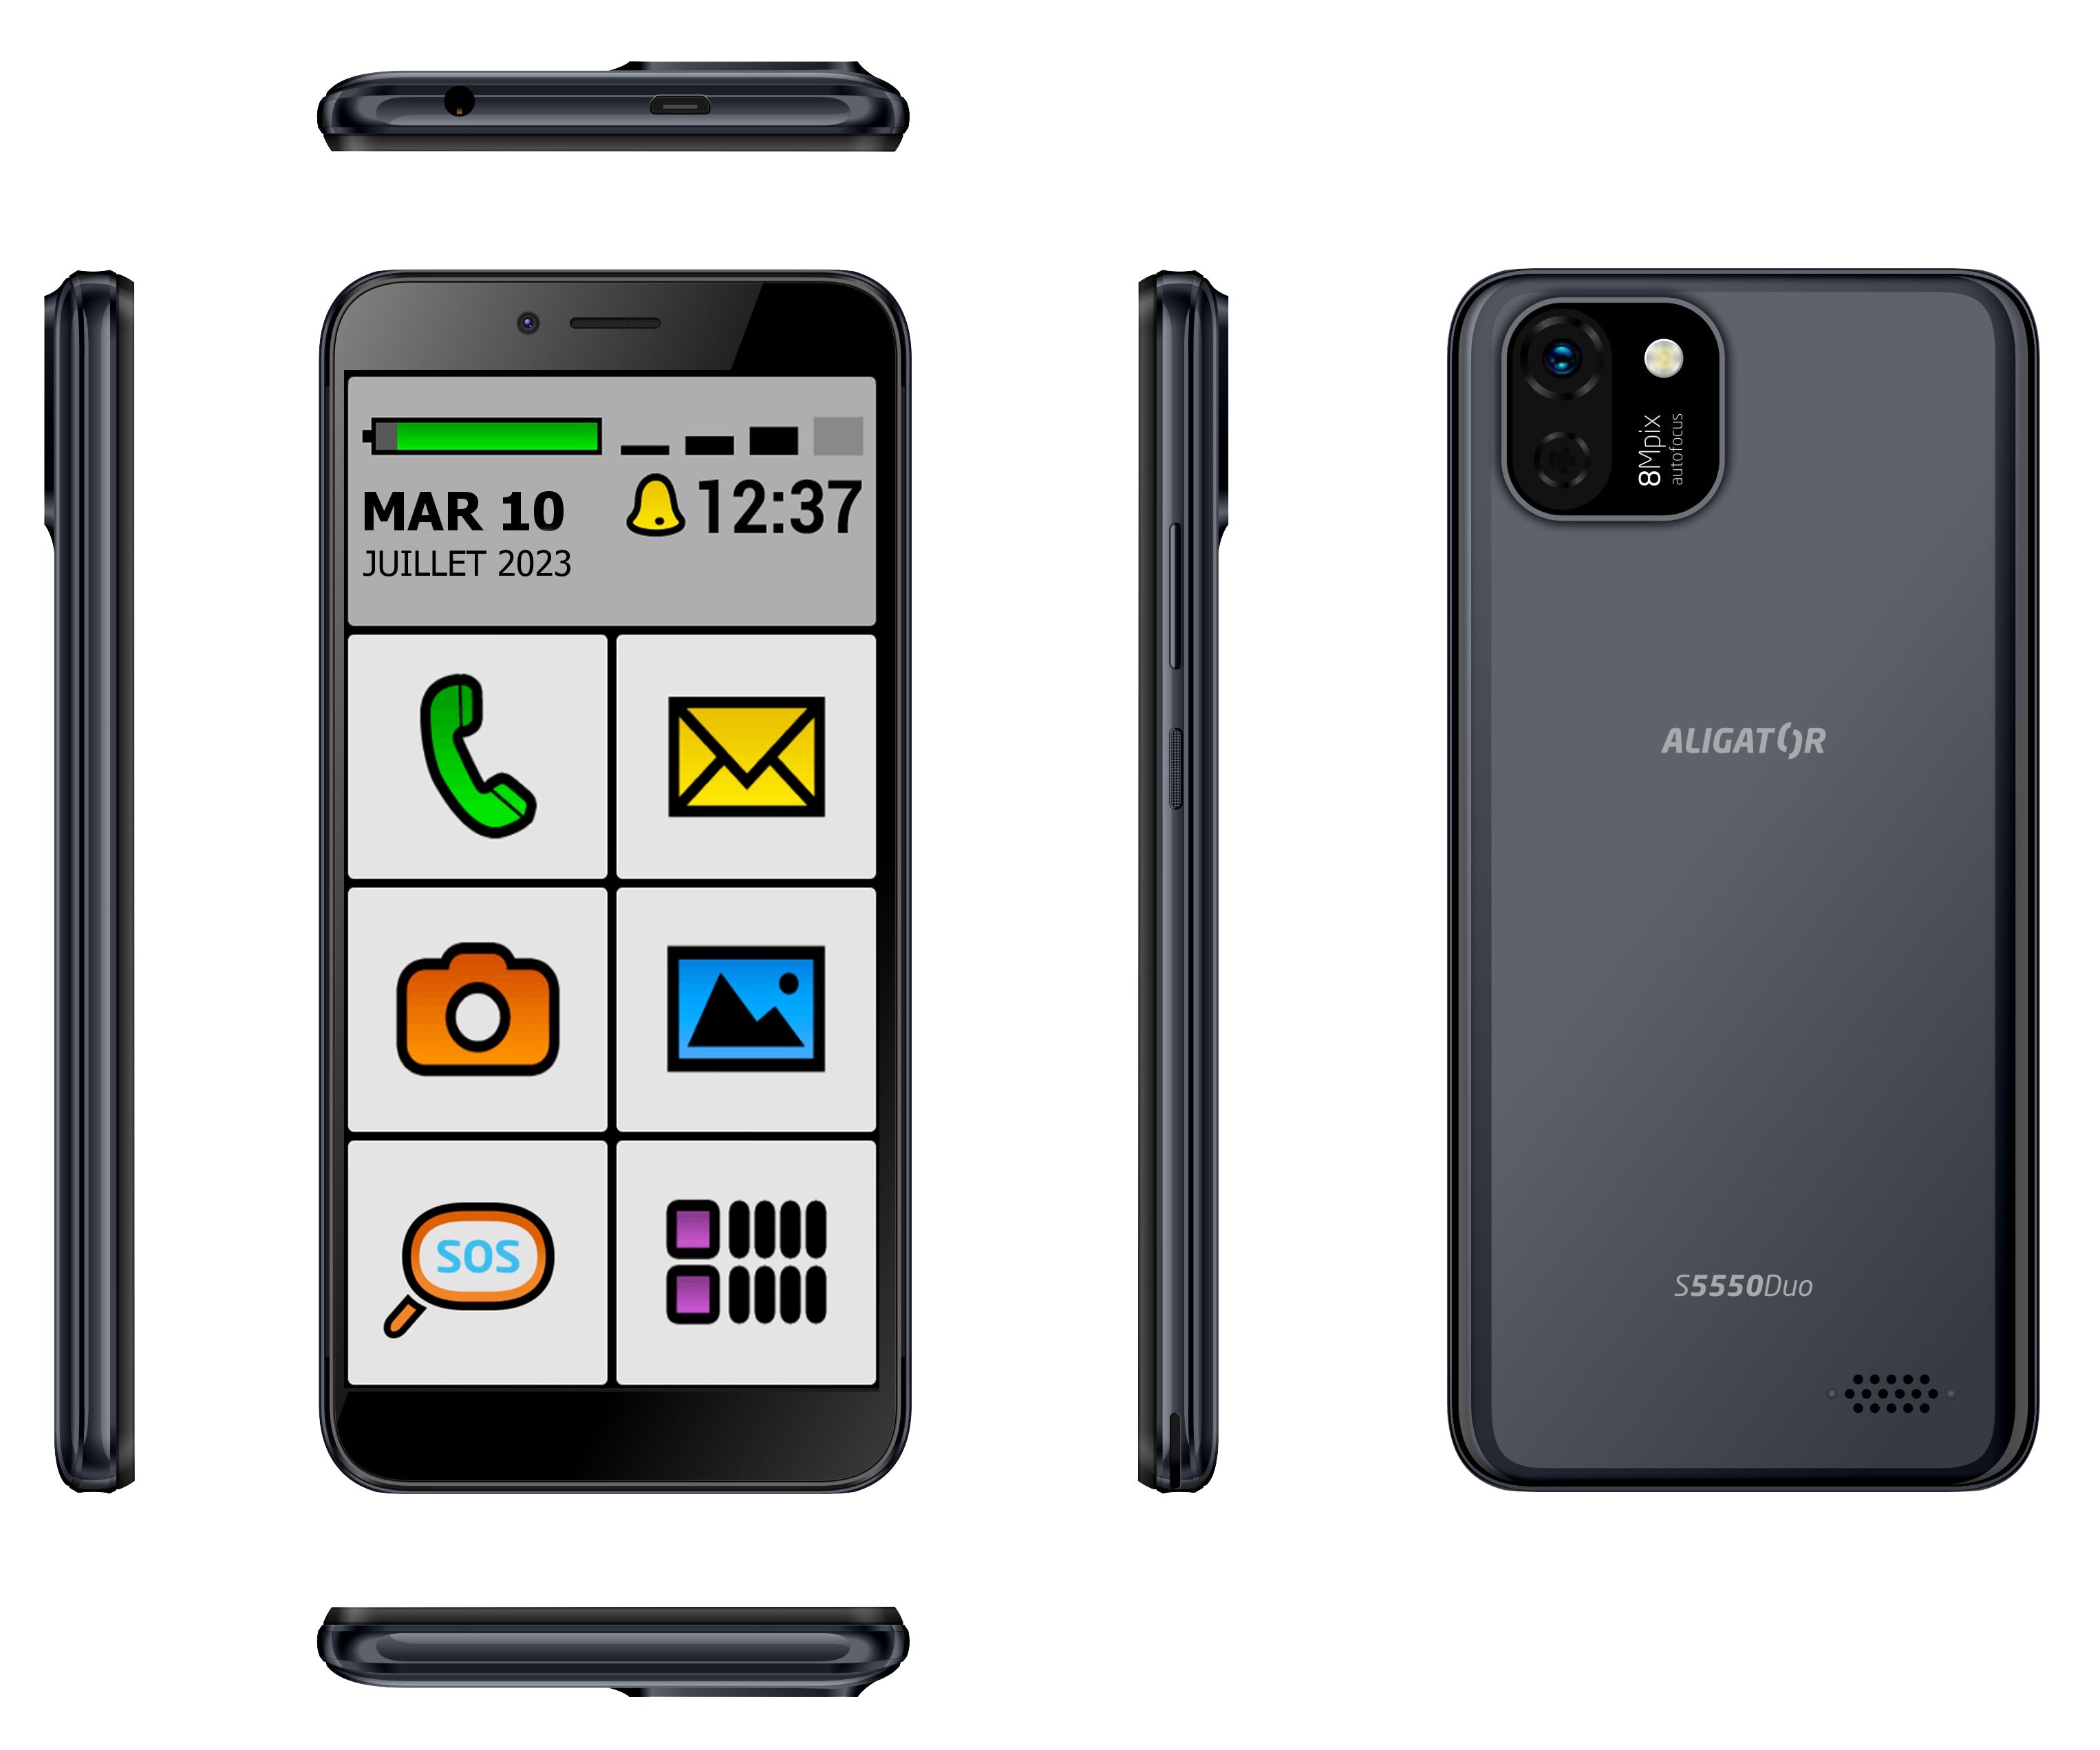 Téléphone Portable Senior [Mobile] pour Personne Agée